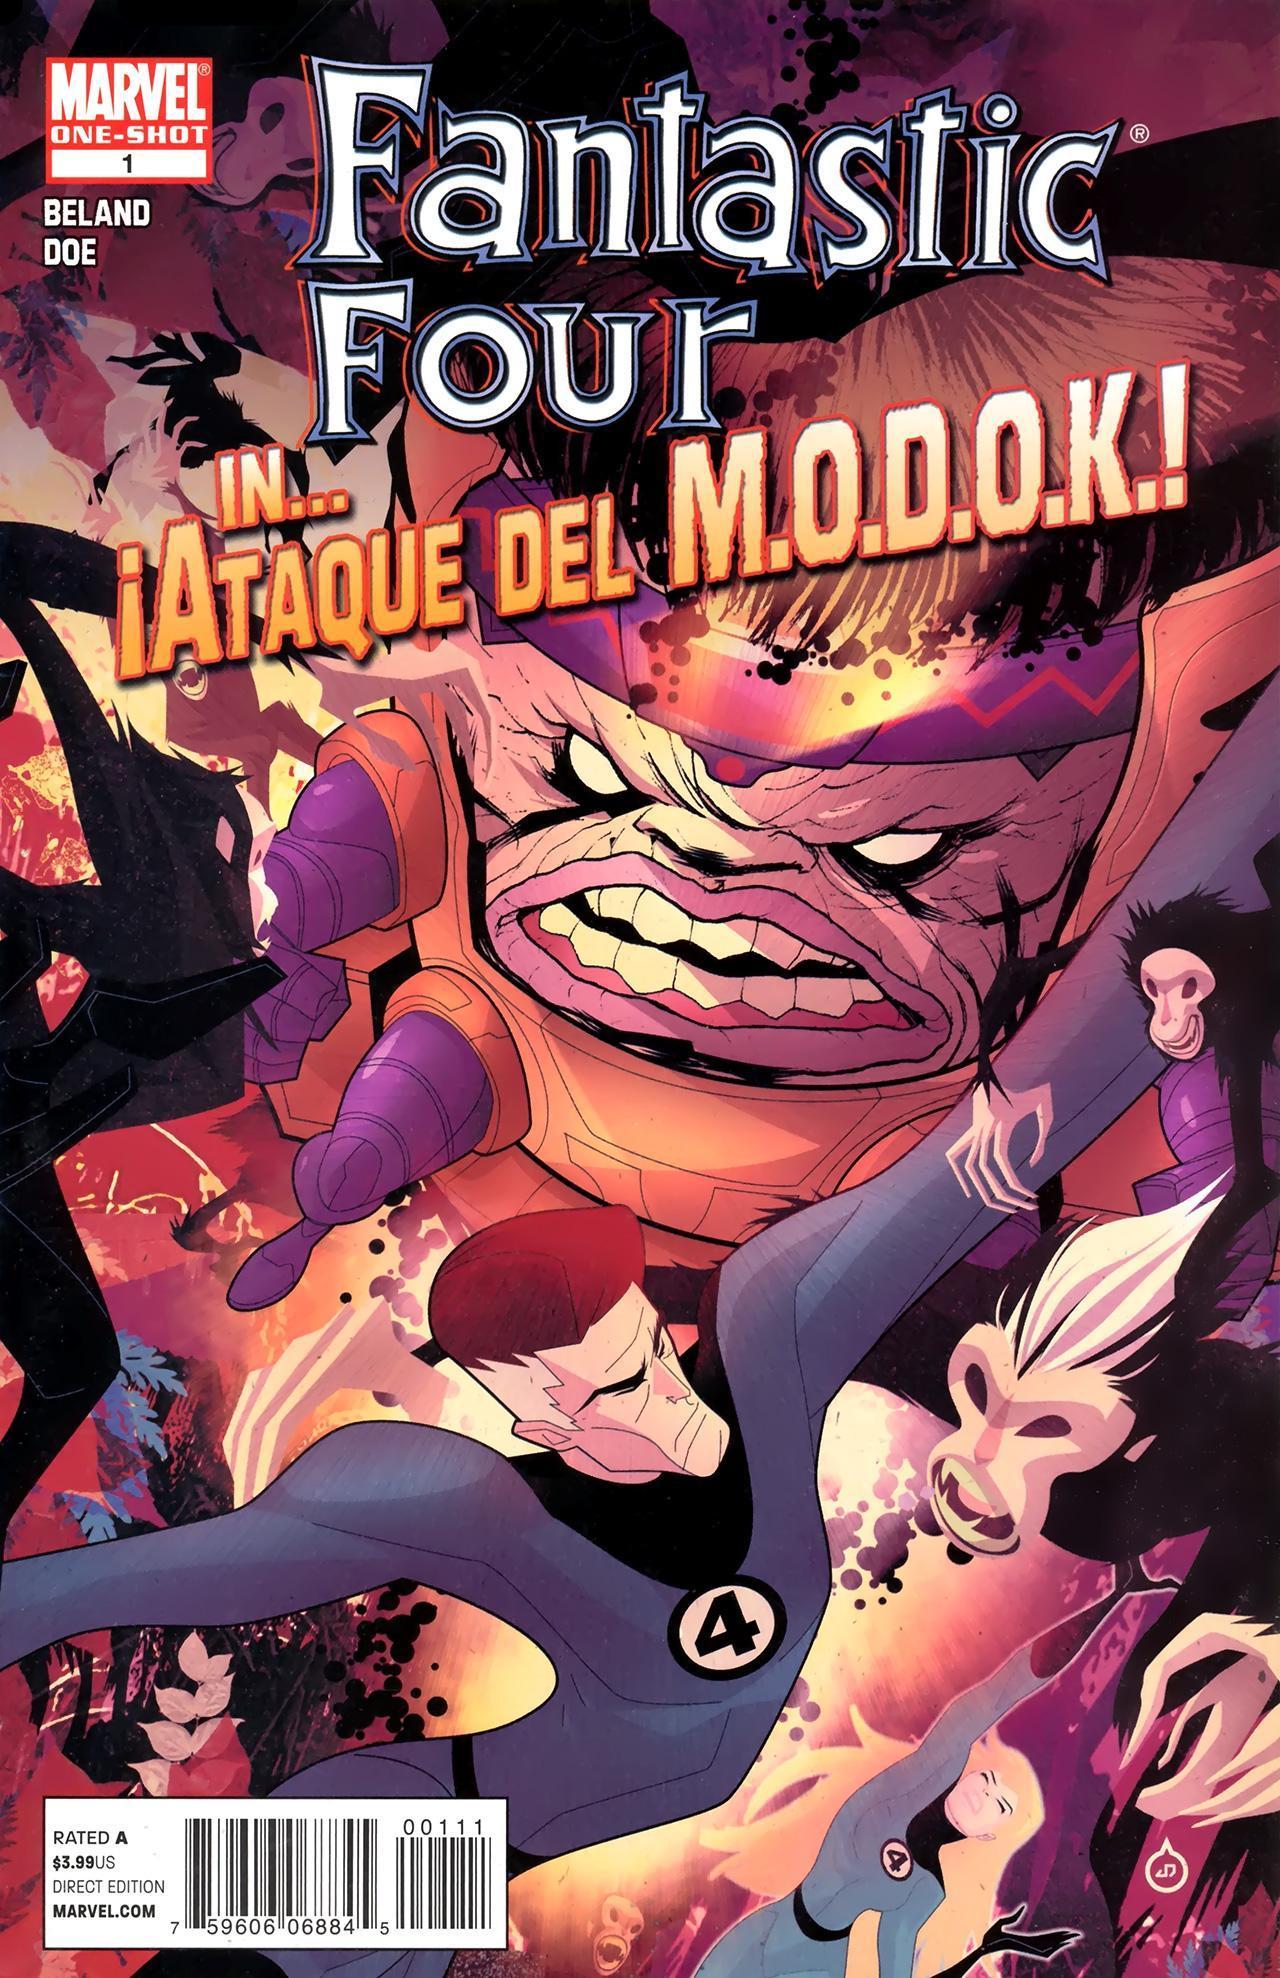 Fantastic Four in Ataque Del M.O.D.O.K.! Vol. 1 #1